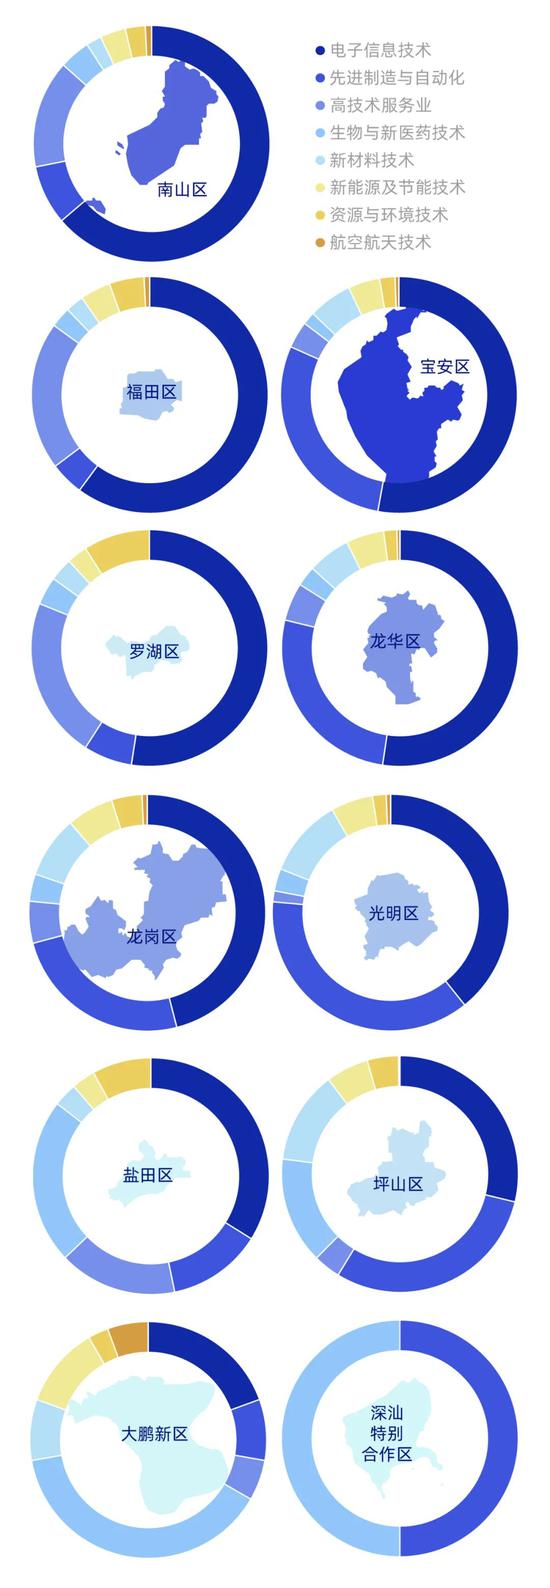 深圳各区国家级高新技术企业的领域分布（数据来源：深圳市科技创新委员会网站）